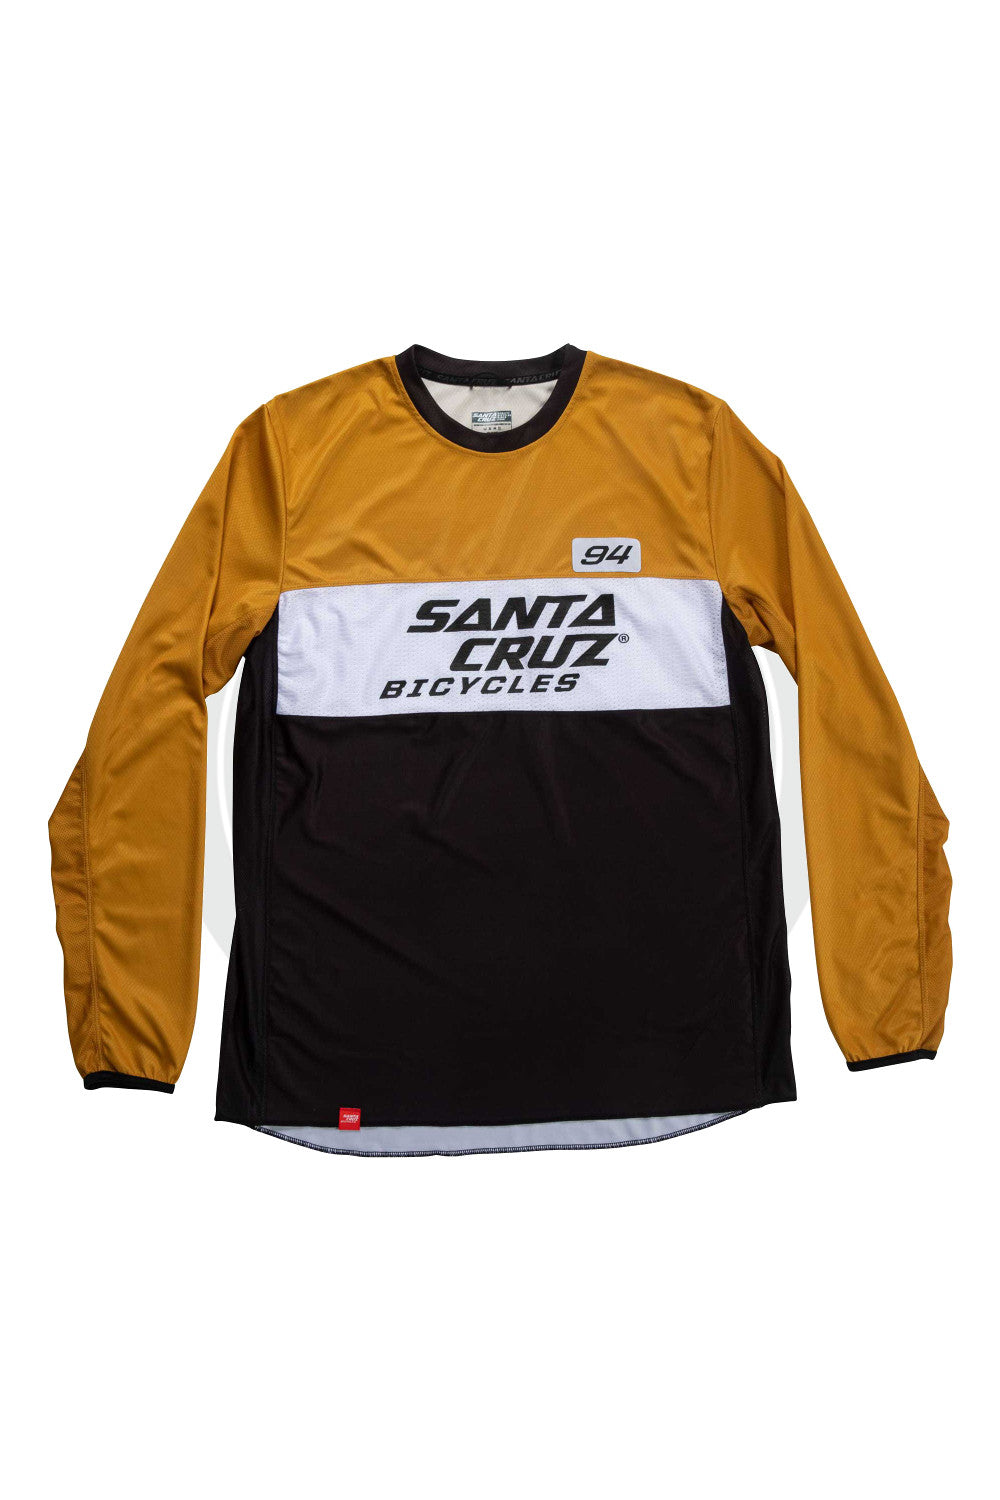 santa cruz bike clothing